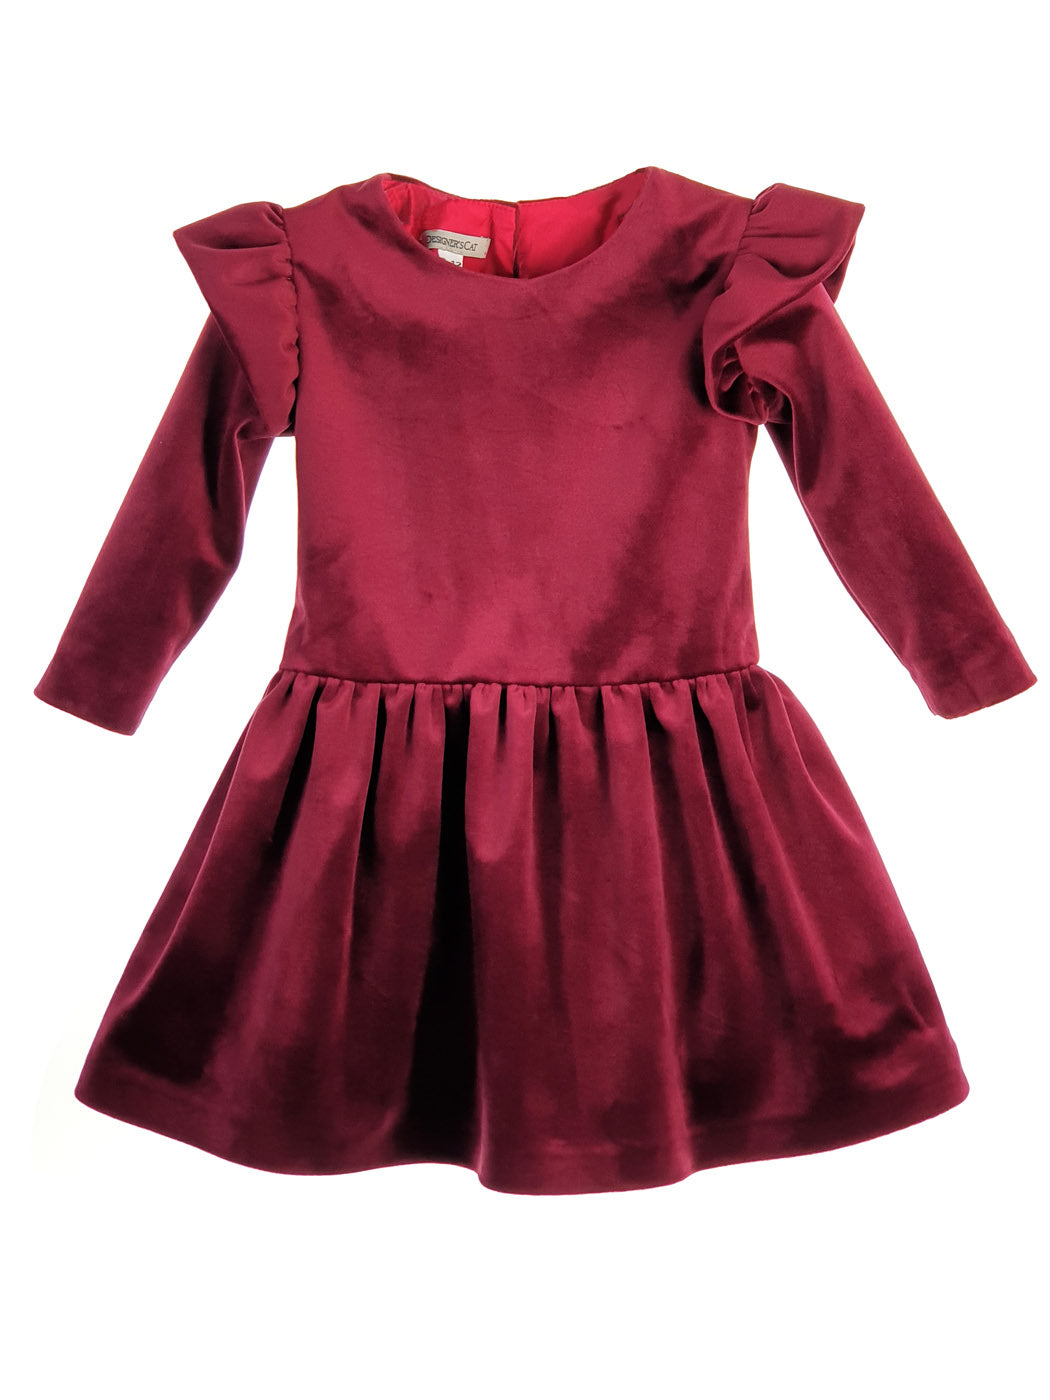 Baby's Velvet dress - BURGUNDY Red